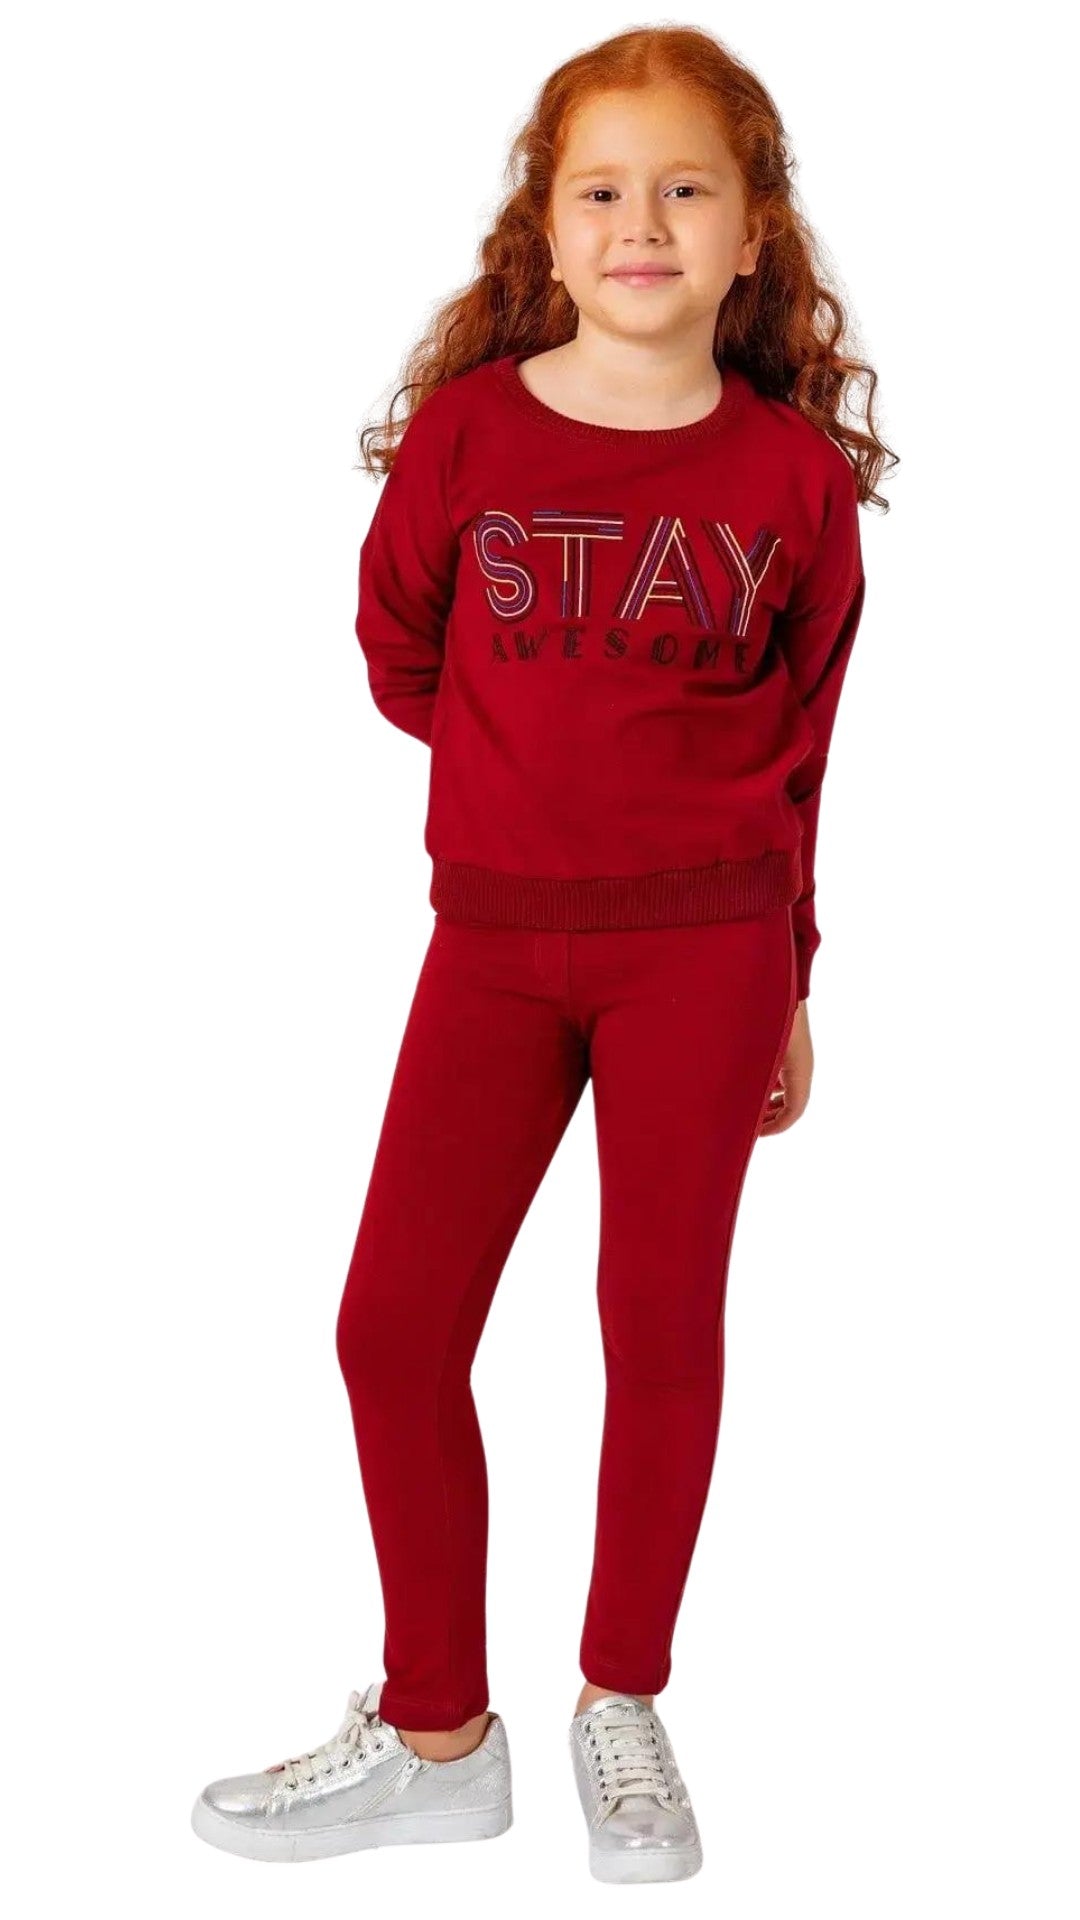 InCity Girls Tween 7-14 Years Regular Fit Red Active Full Zip Jacket a